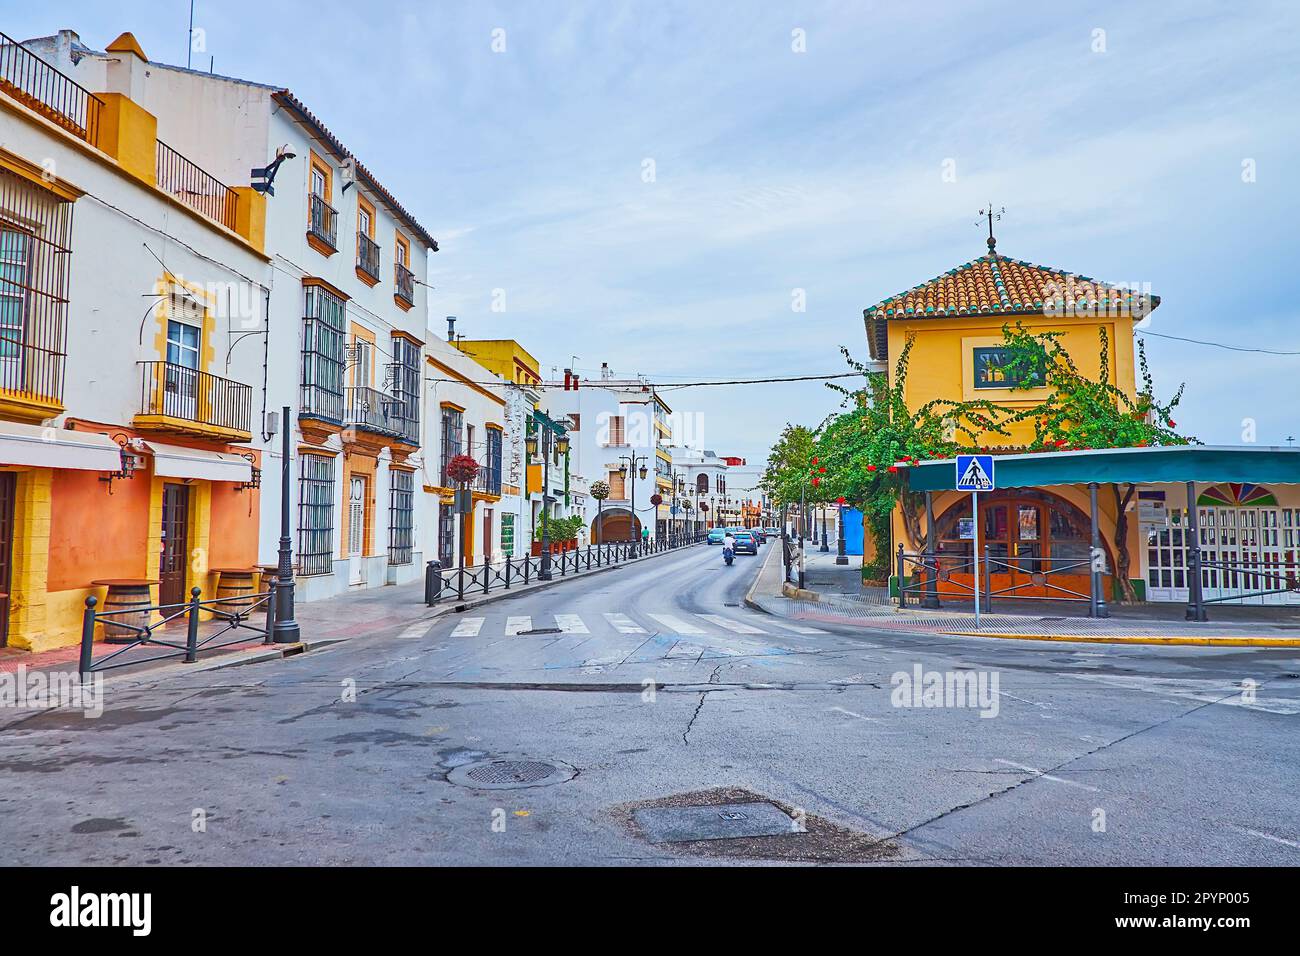 Le paysage urbain de la vieille ville de la Plaza de las Galeras Reales, observant les maisons d'époque dense de Calle Ribera del Marisco, El Puerto, Espagne Banque D'Images